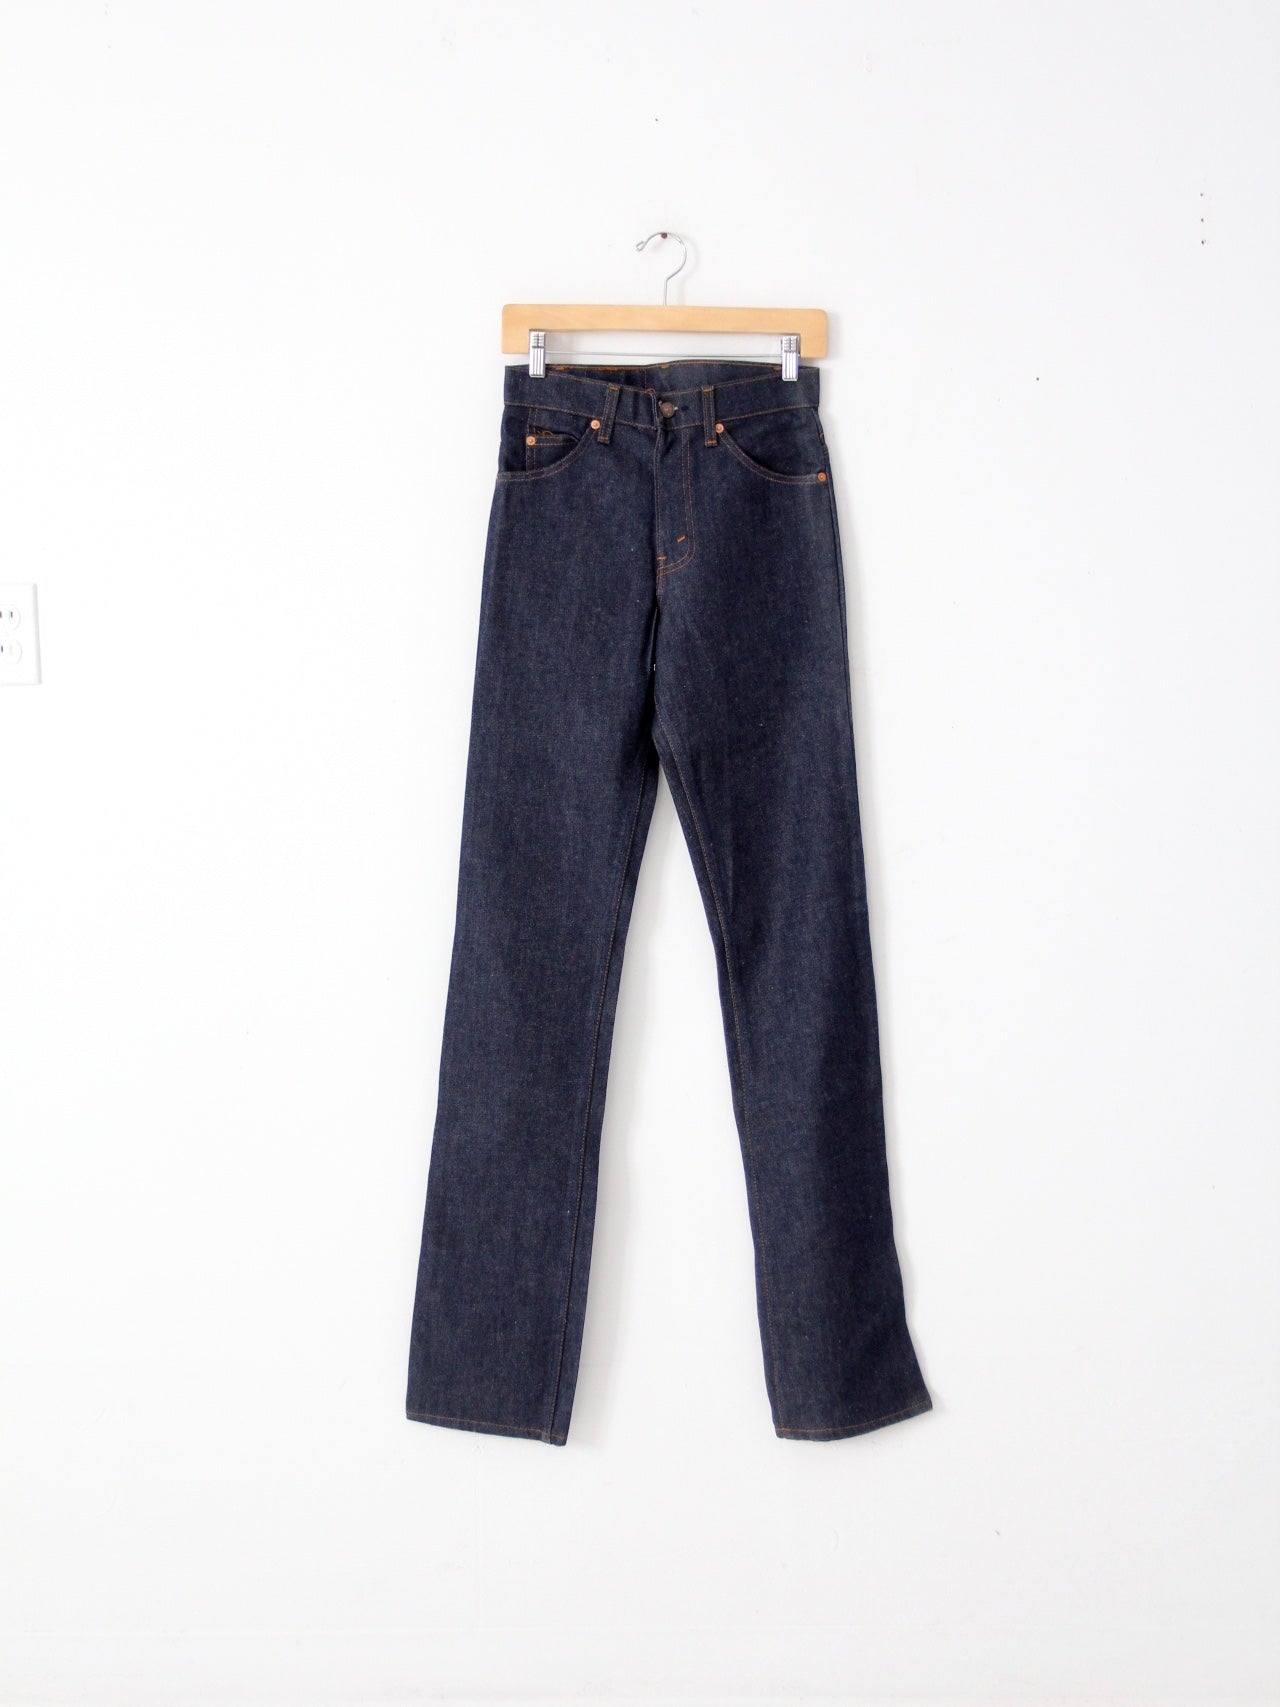 vintage Levis 509 jeans, 28 x 36 – 86 Vintage